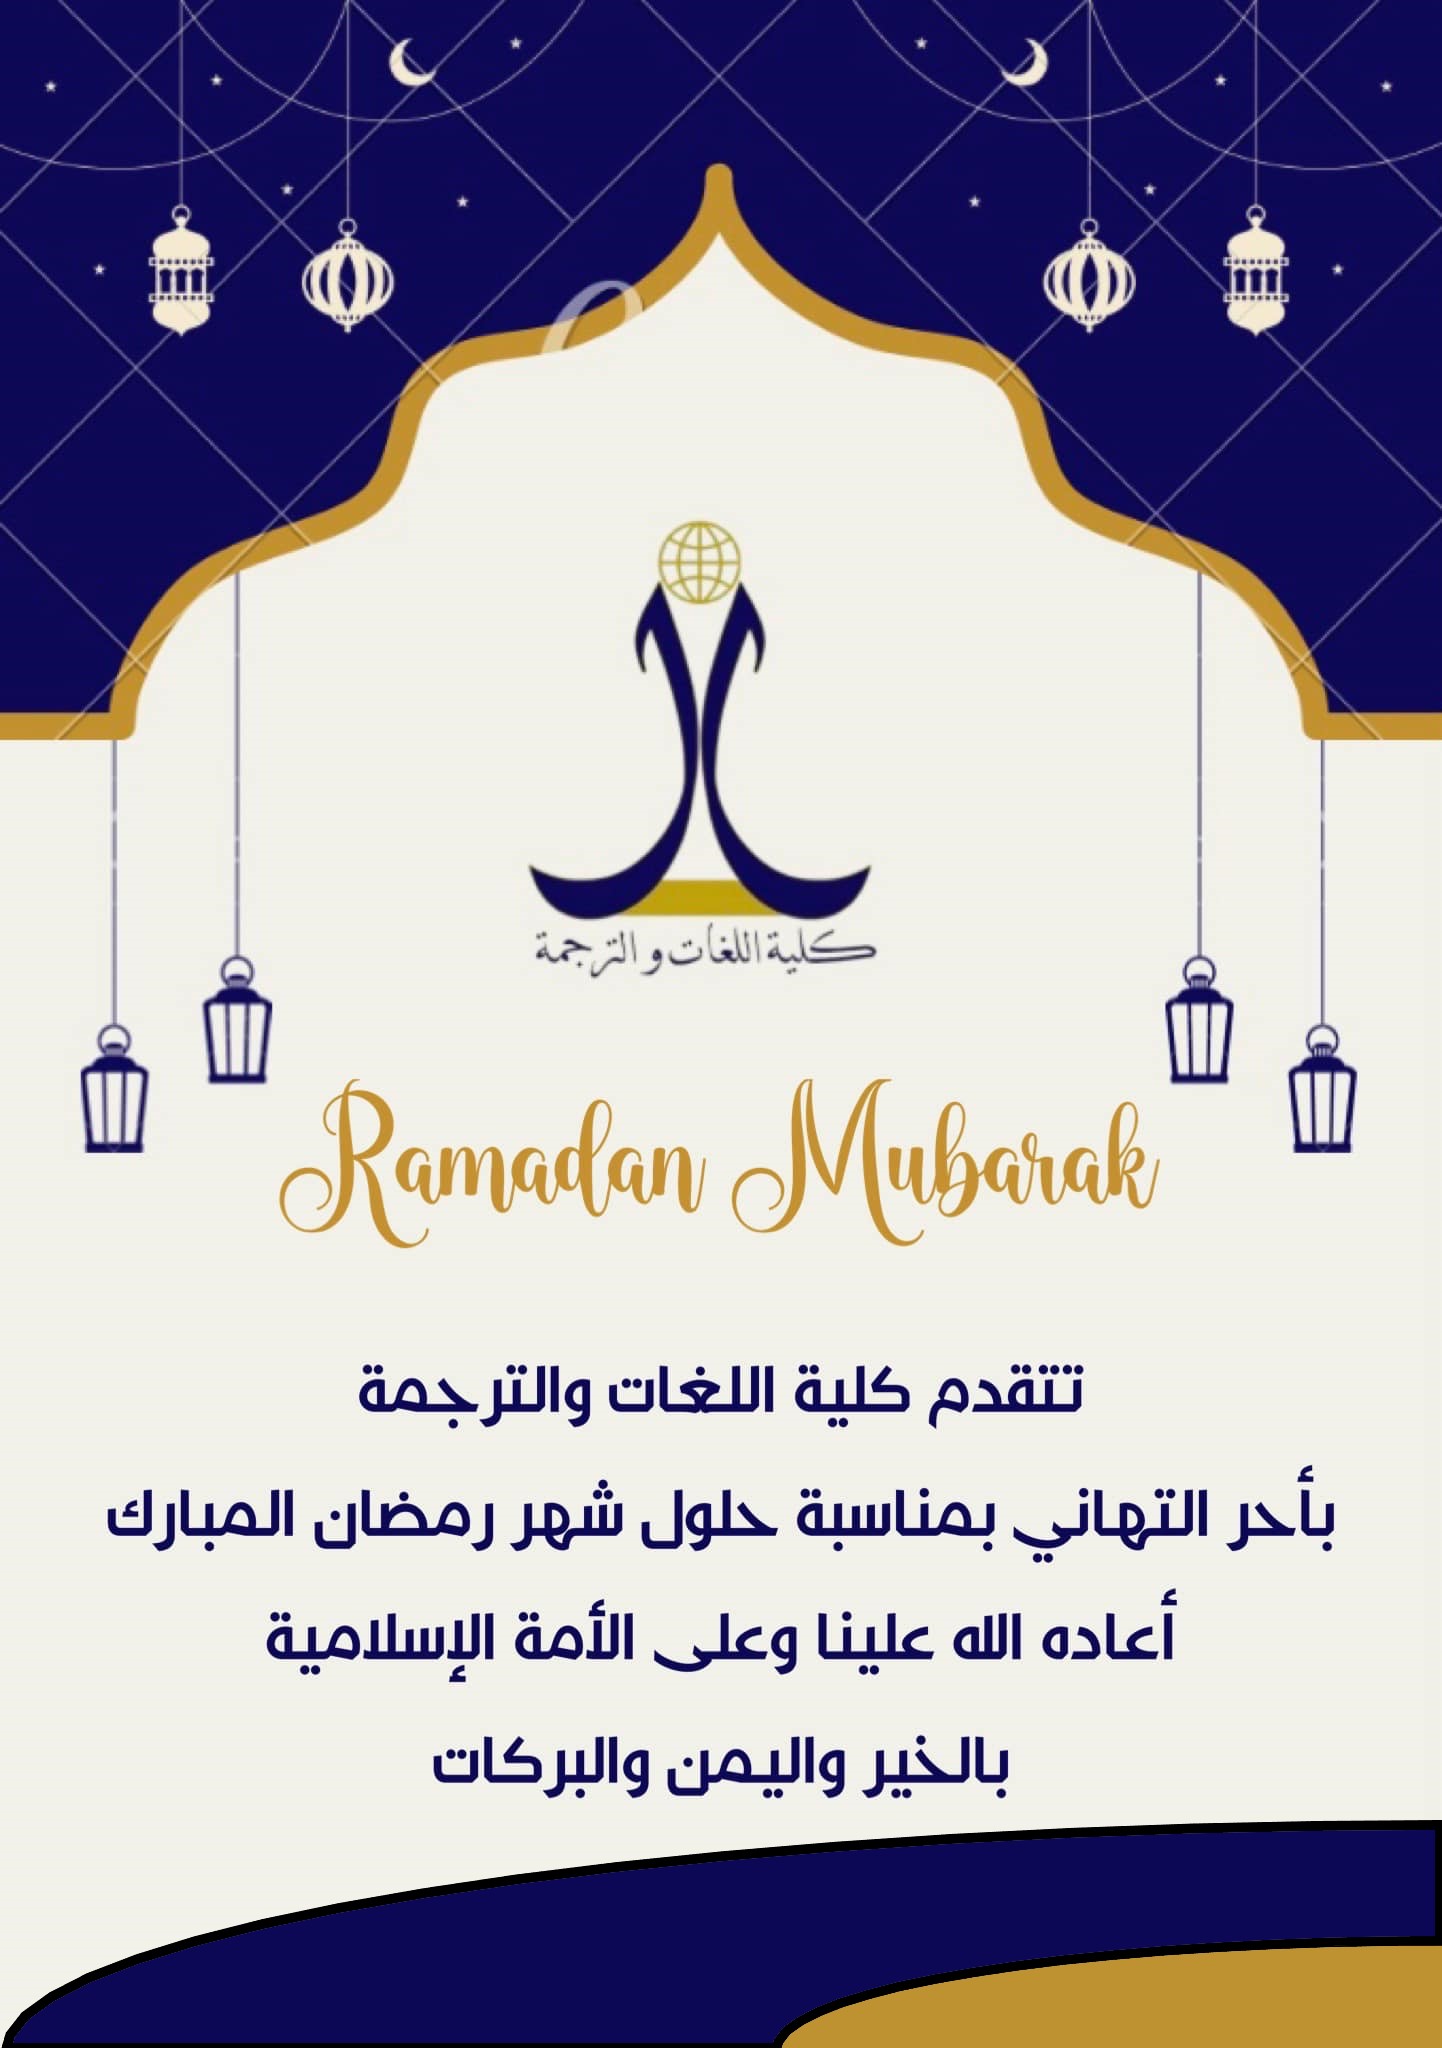 تتقدم لكم كلية اللغات والترجمة بأحر التهاني بمناسبة حلول شهر رمضان المبارك.